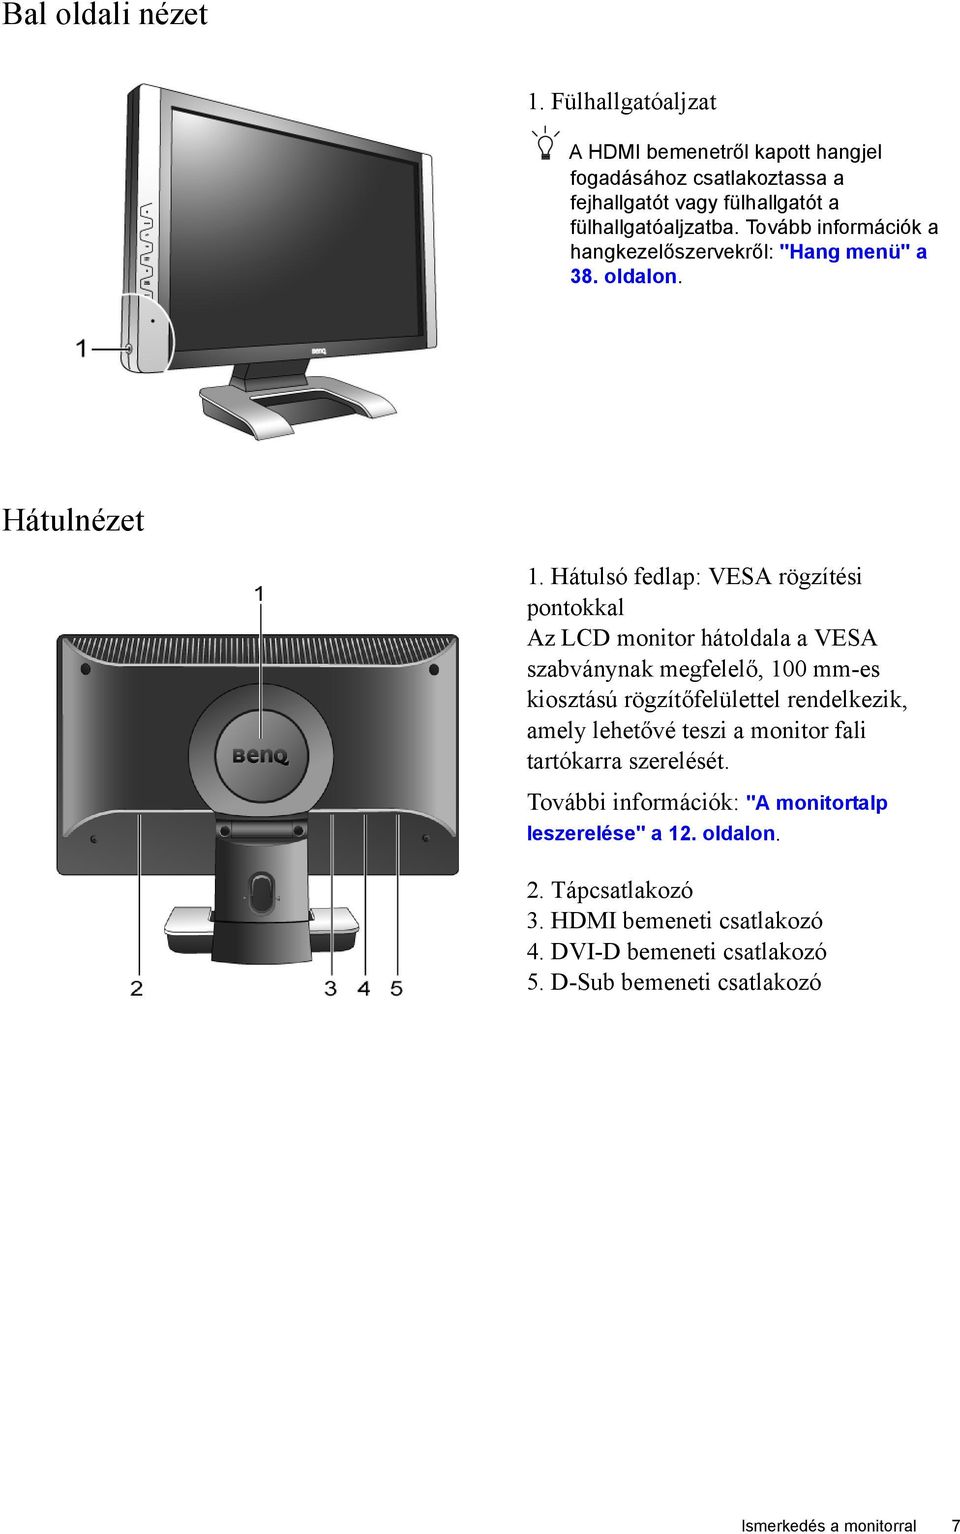 Hátulsó fedlap: VESA rögzítési pontokkal Az LCD monitor hátoldala a VESA szabványnak megfelelő, 100 mm-es kiosztású rögzítőfelülettel rendelkezik, amely